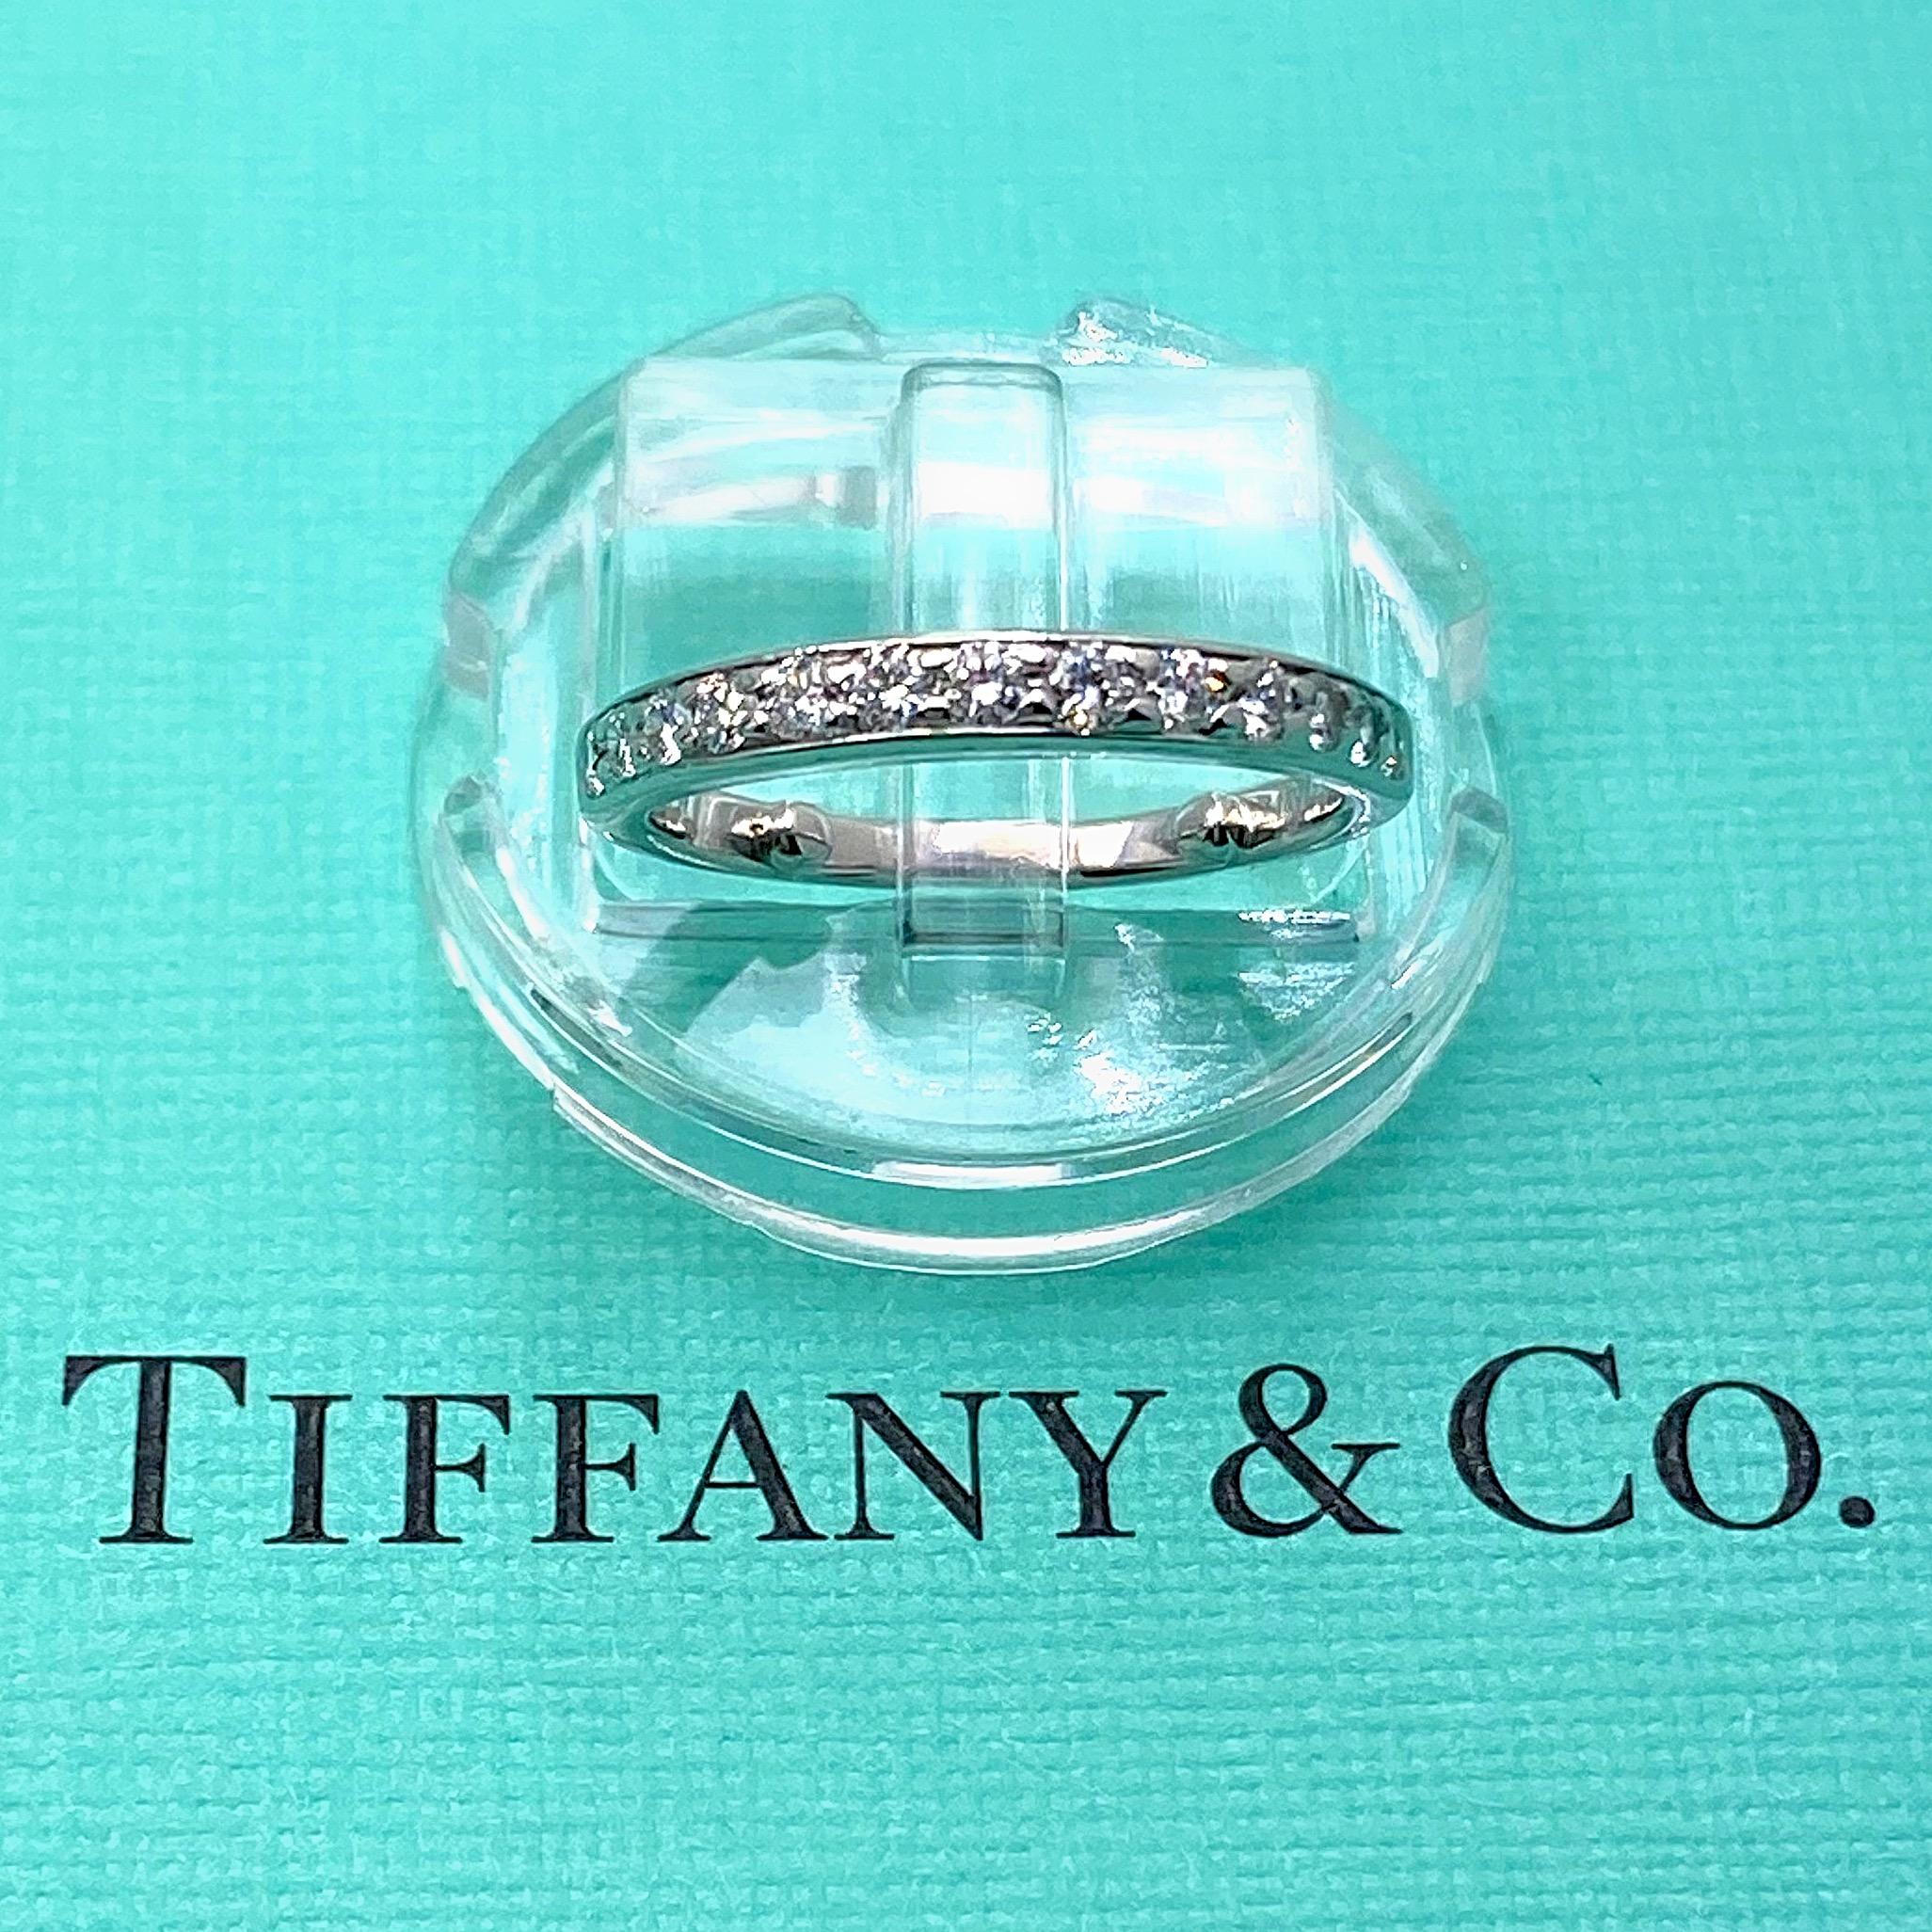 tiffany ring size